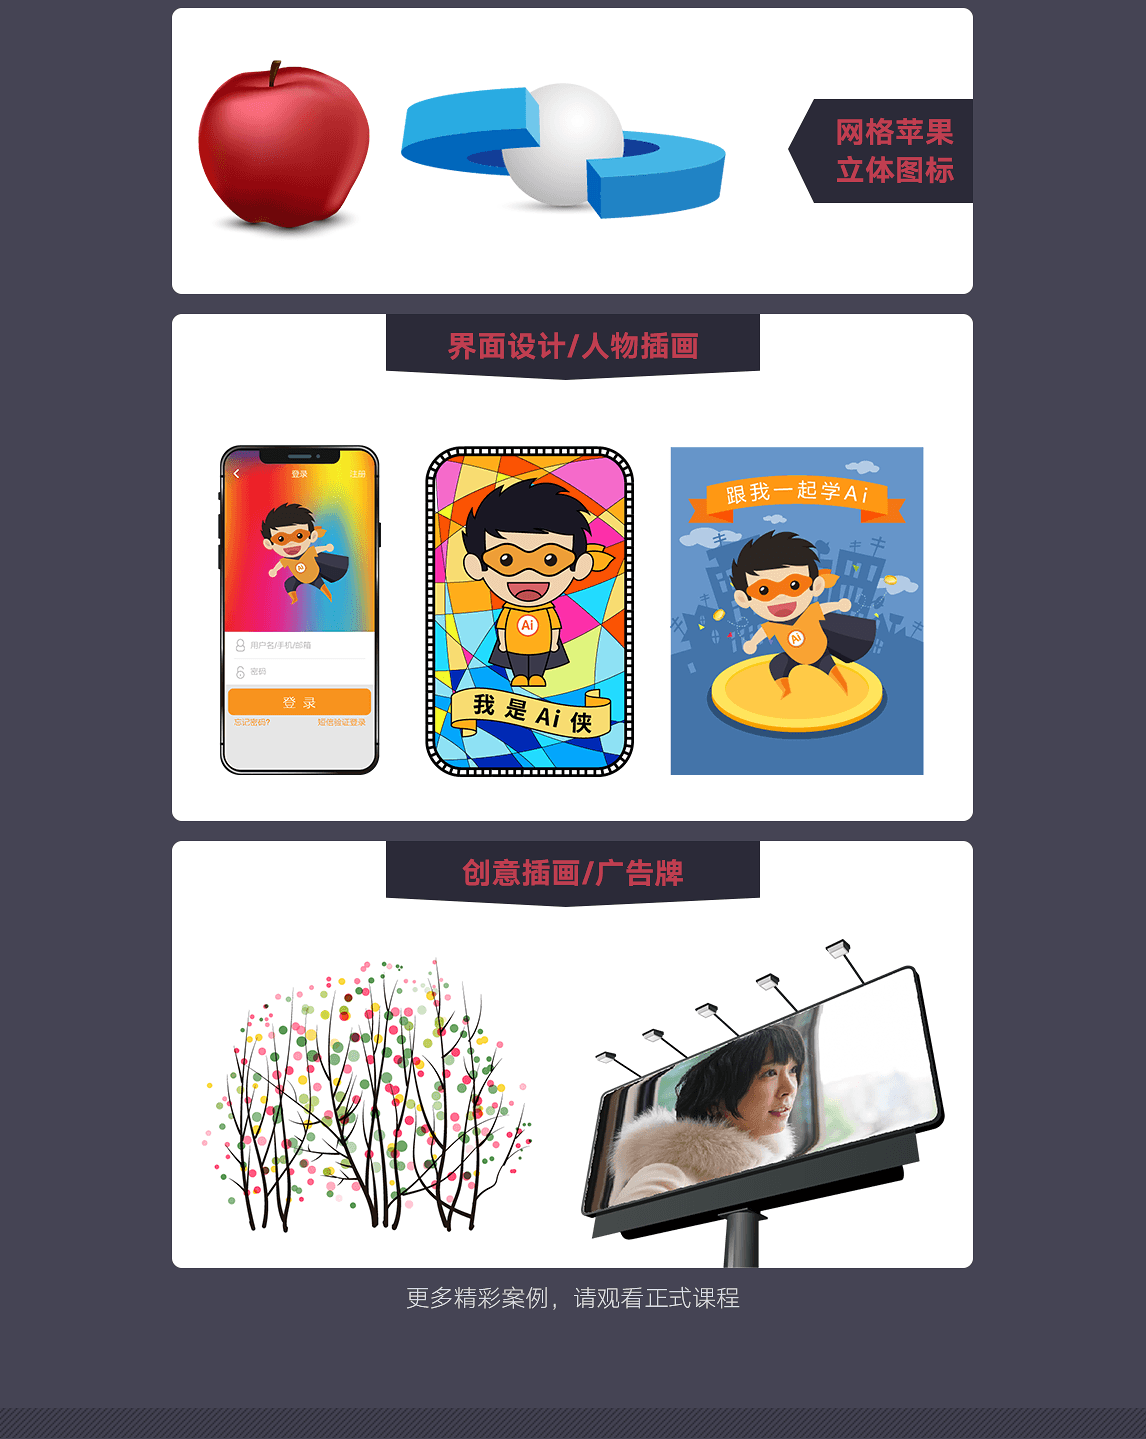 张力涛ai教程官网，课程案例，网格苹果、立体图标、界面设计、人物插画、创意插画。